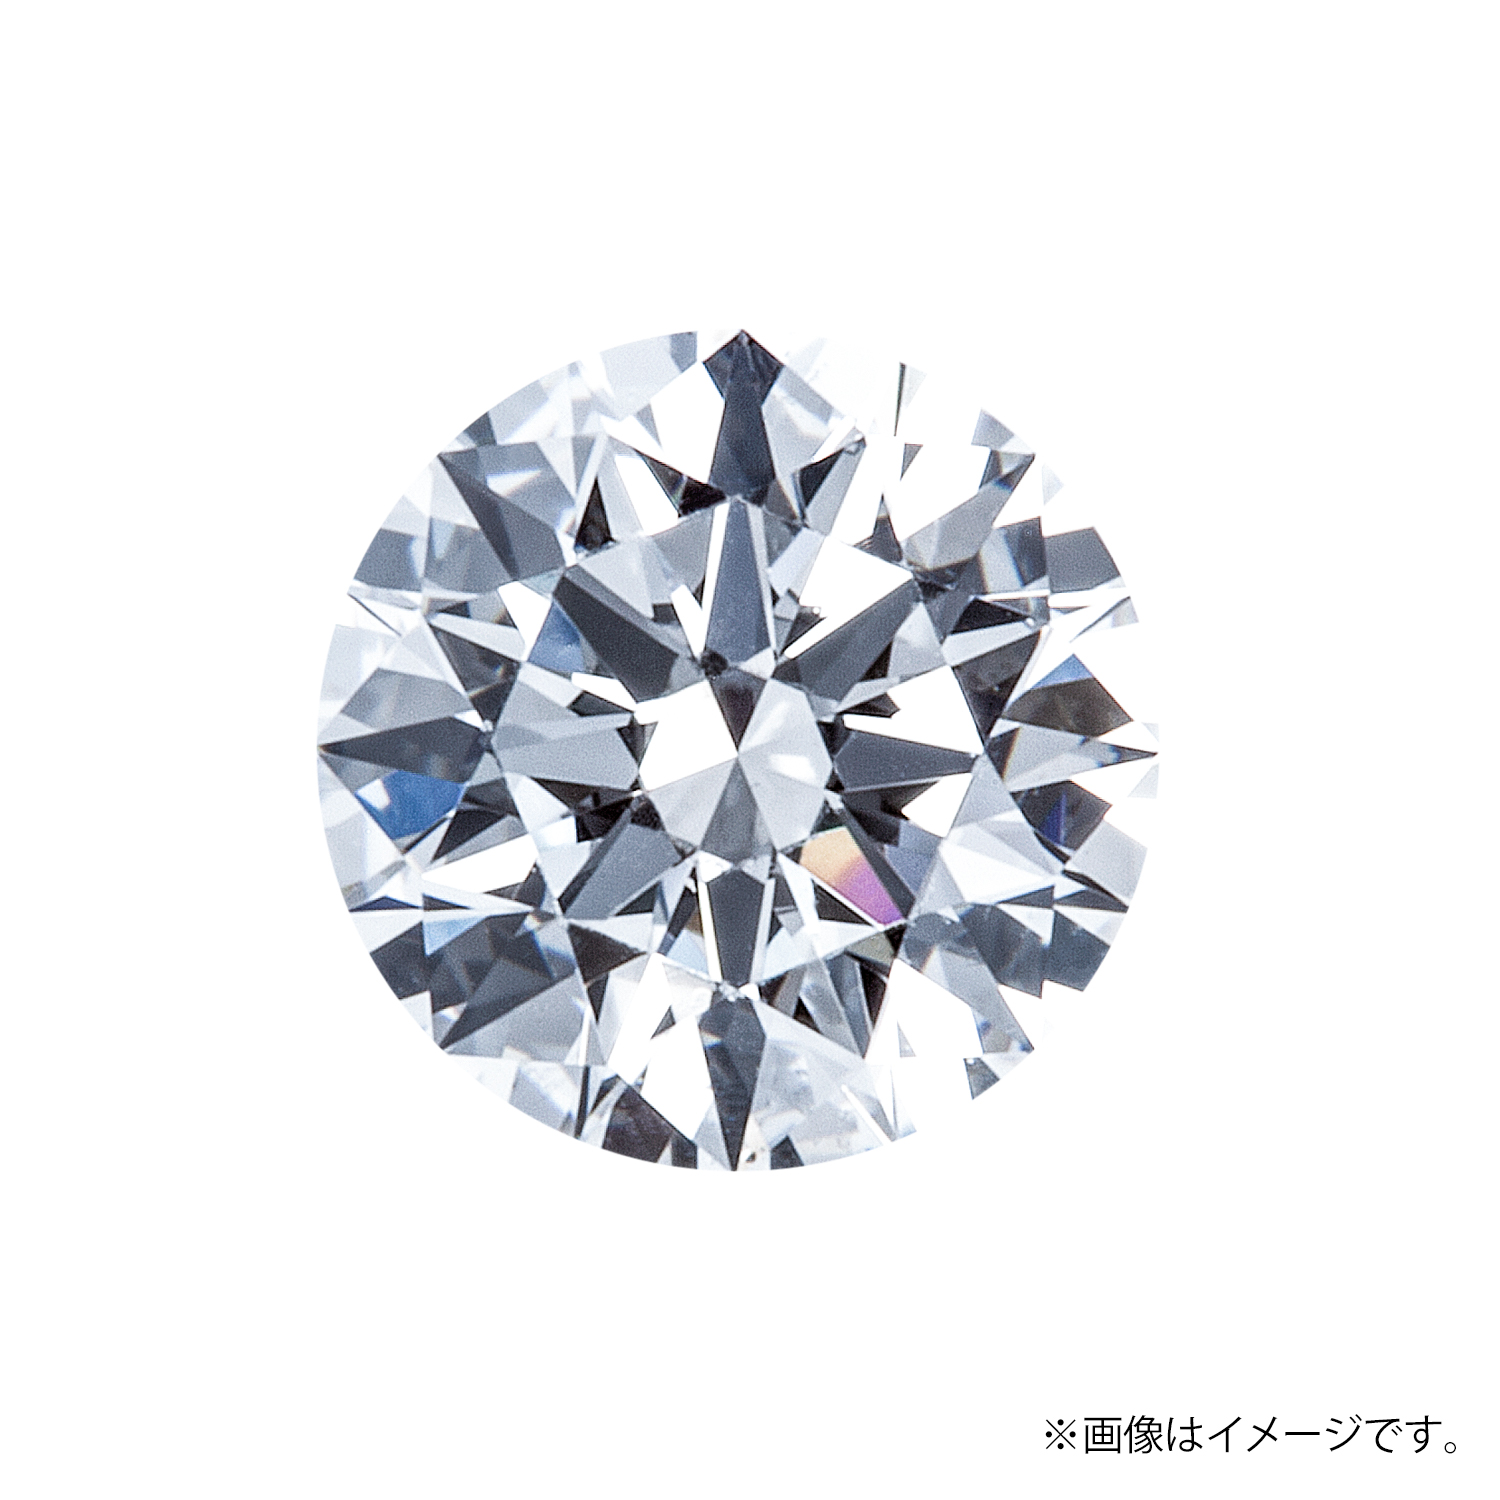 0.204ct Round ダイヤモンド / D / VS2 / EX H&C